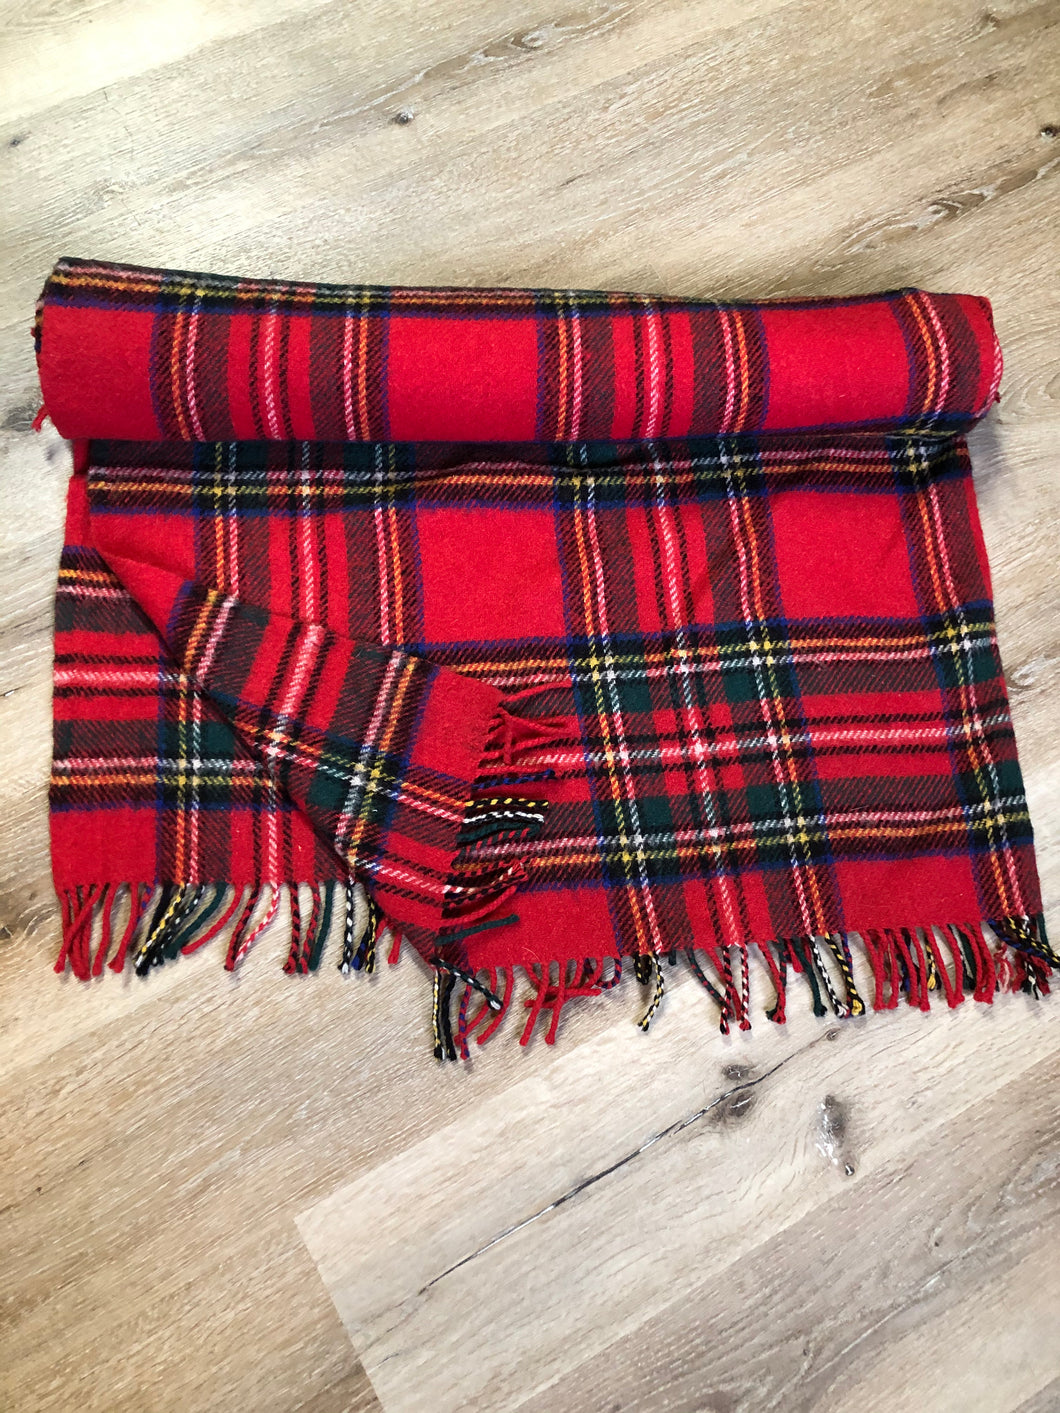 Tartan Plaid-Merino Lambswool Throw Blanket-Royal Stewart Tartan-Made